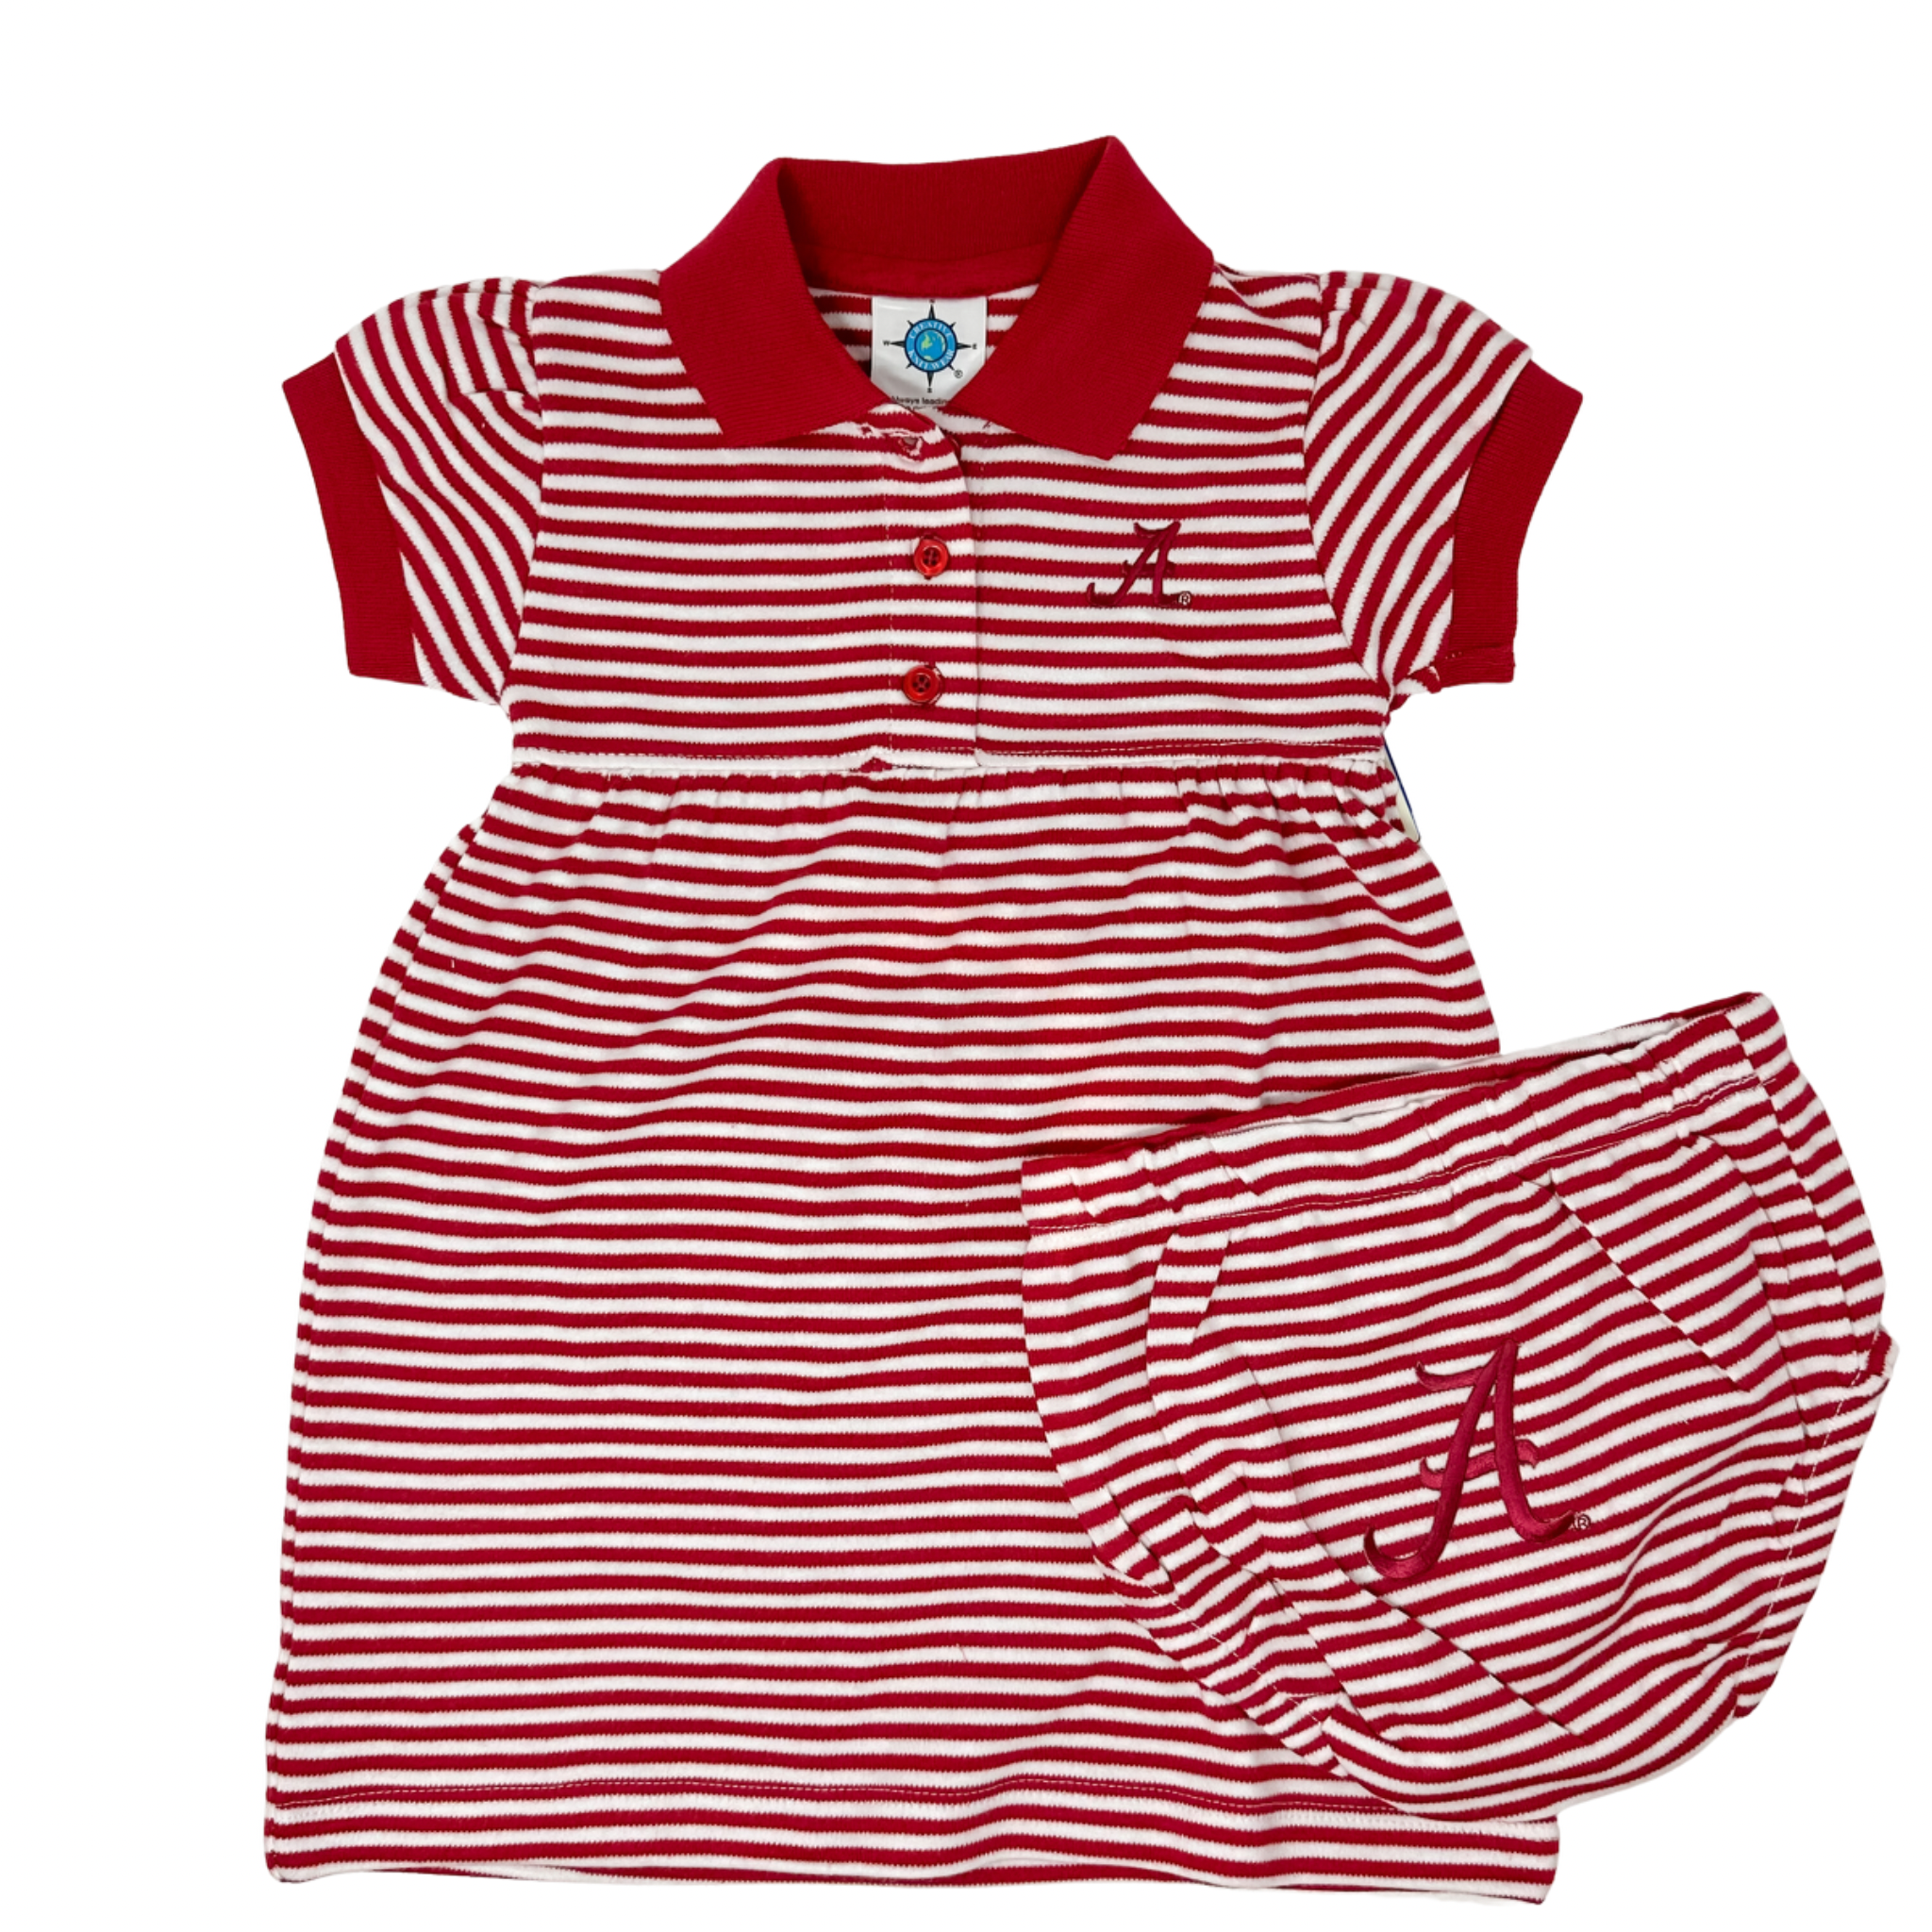 Creative Knitwear - Stripe Dress/ Bloomer - Bama Crimson